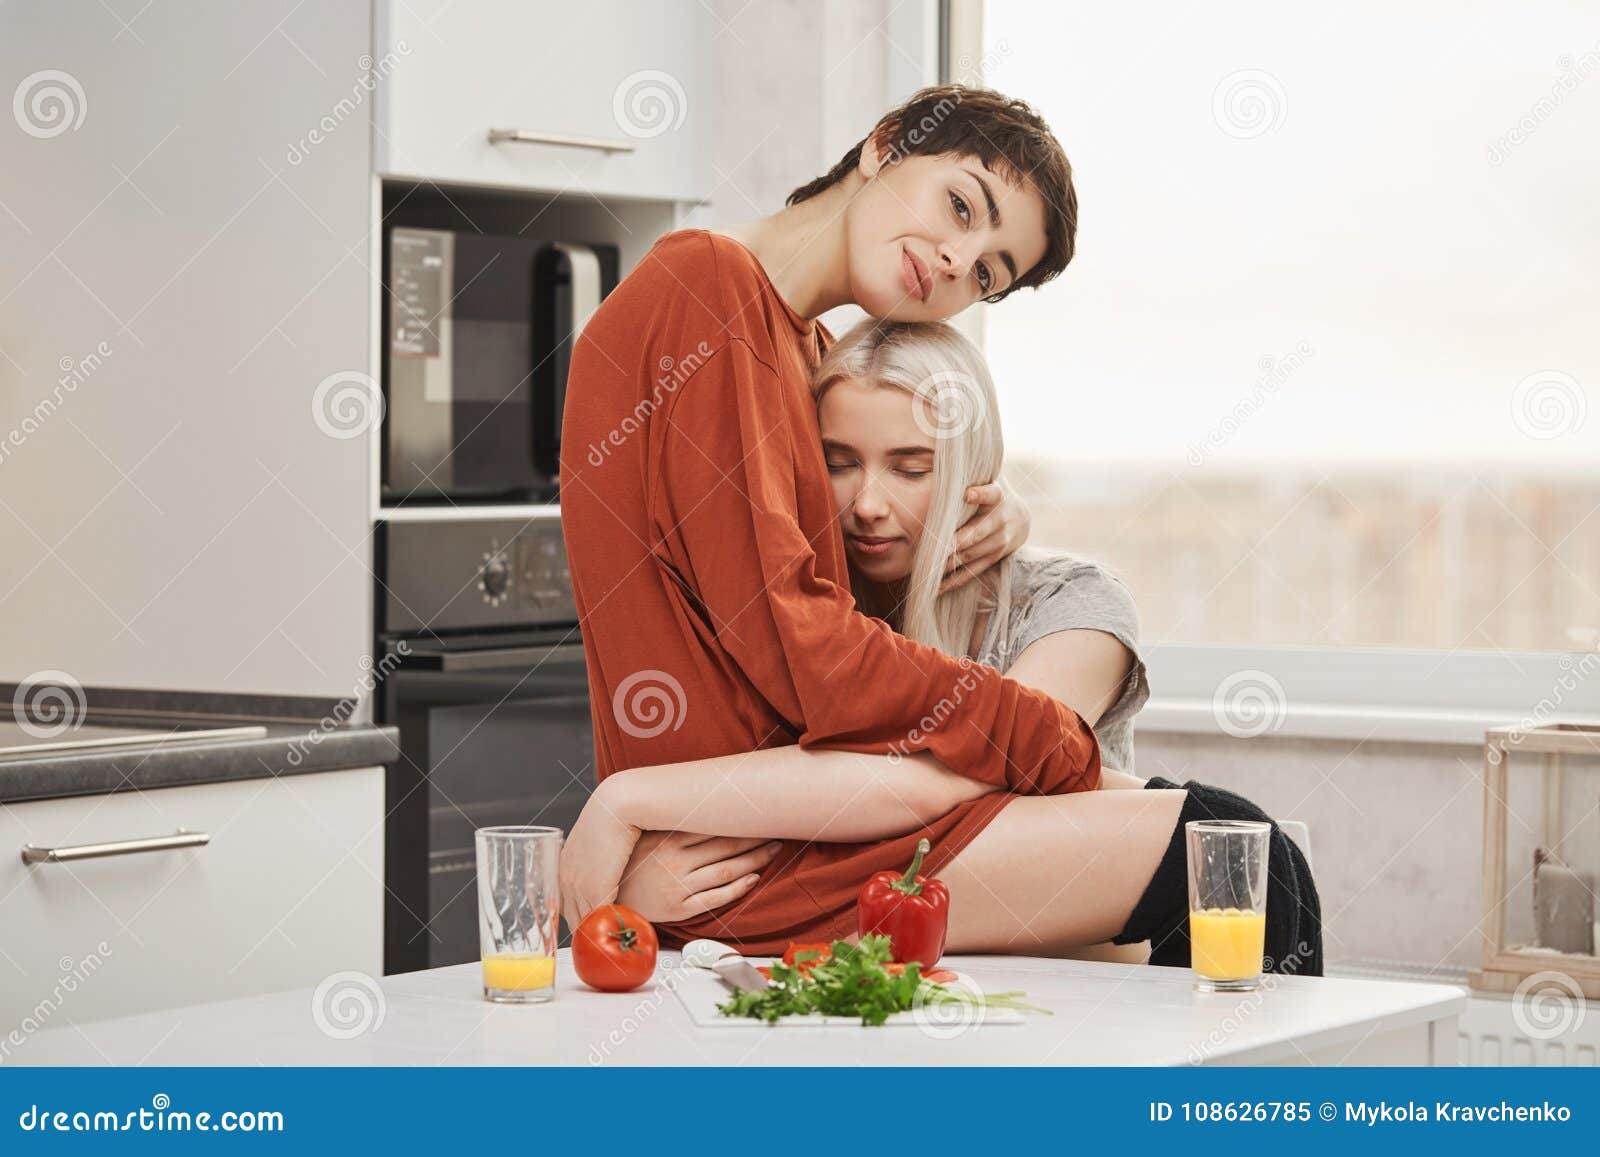 Lesbian Hot Eating